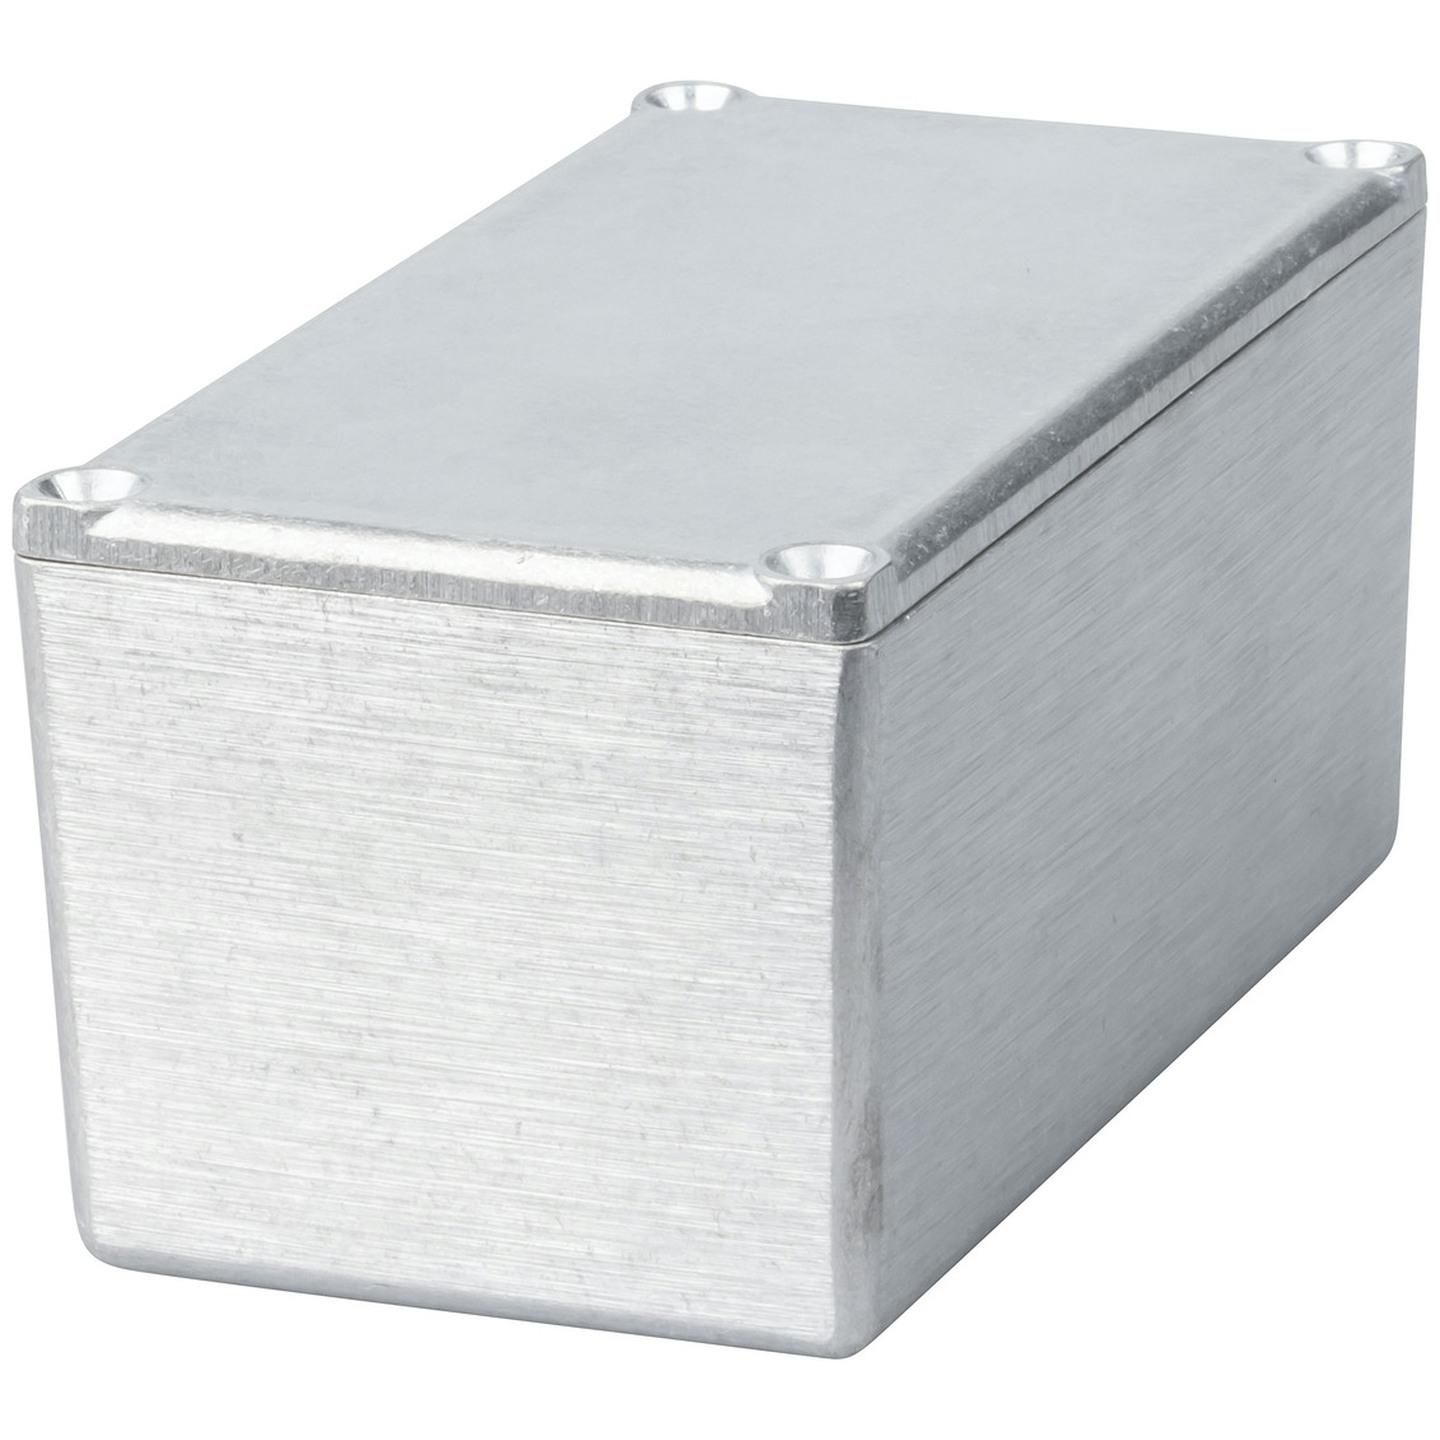 Economy Die-cast Aluminium Boxes - 111 x 60 x 54mm